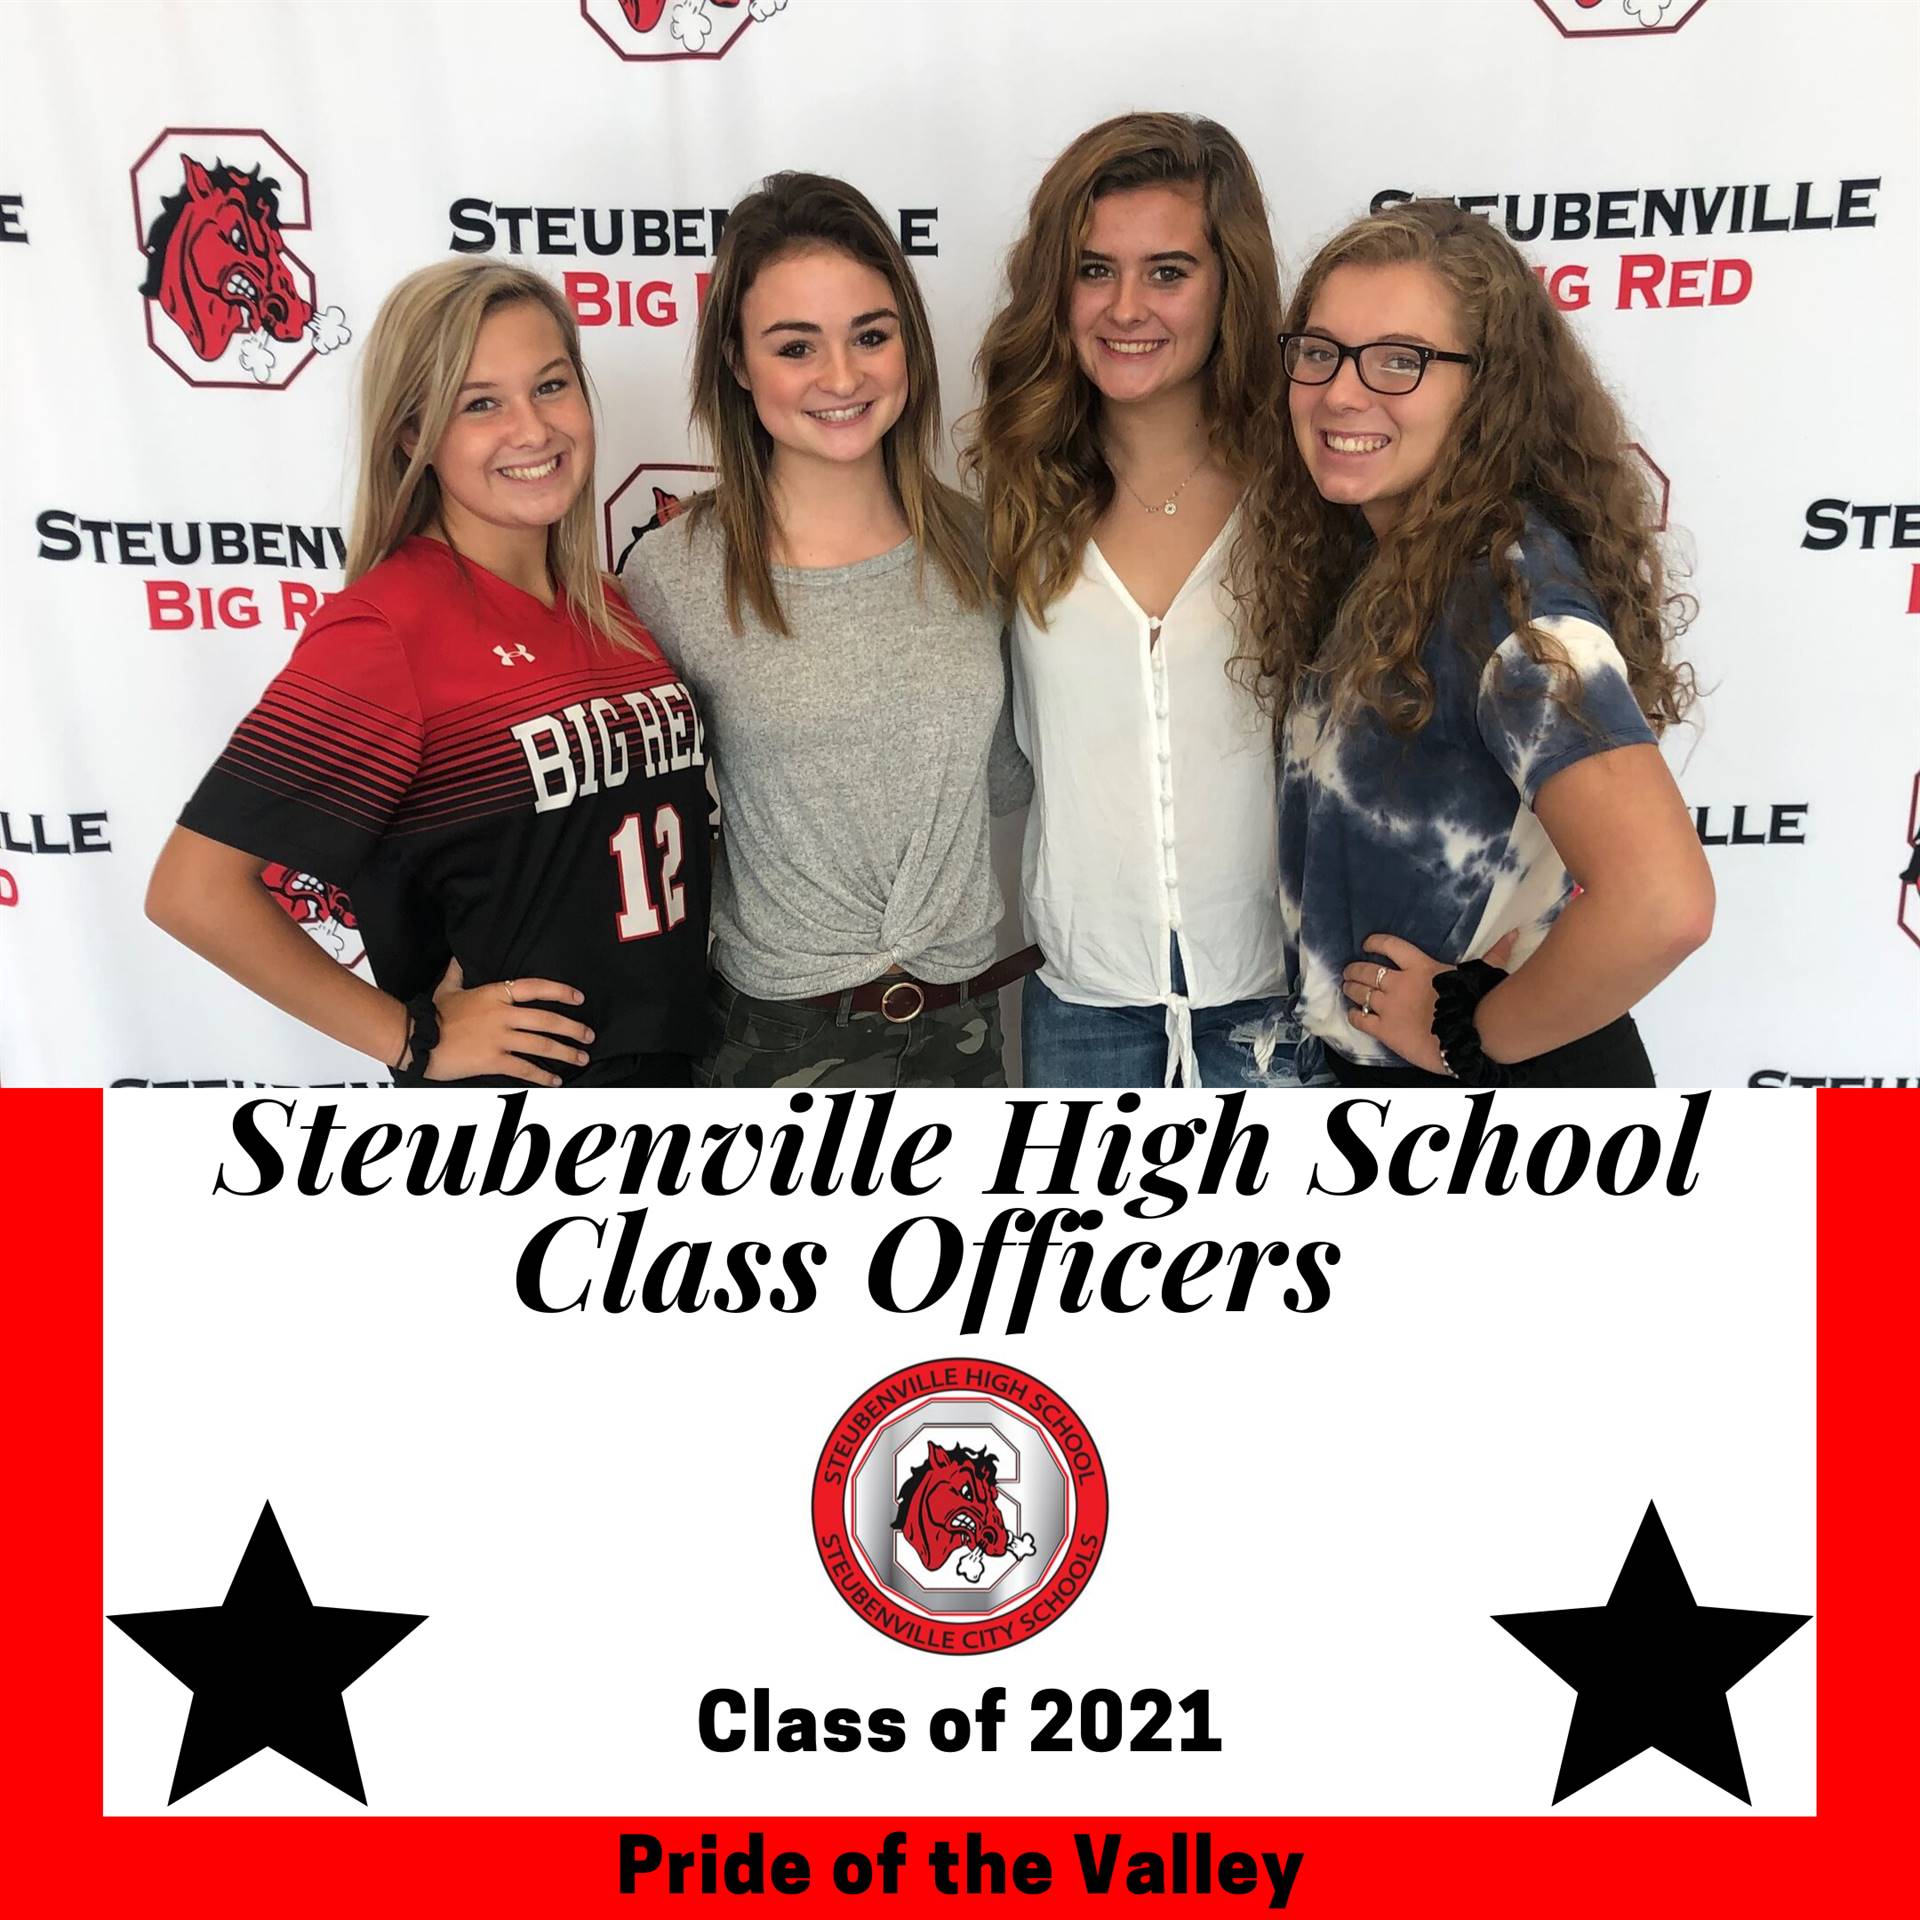 Steubenville High School